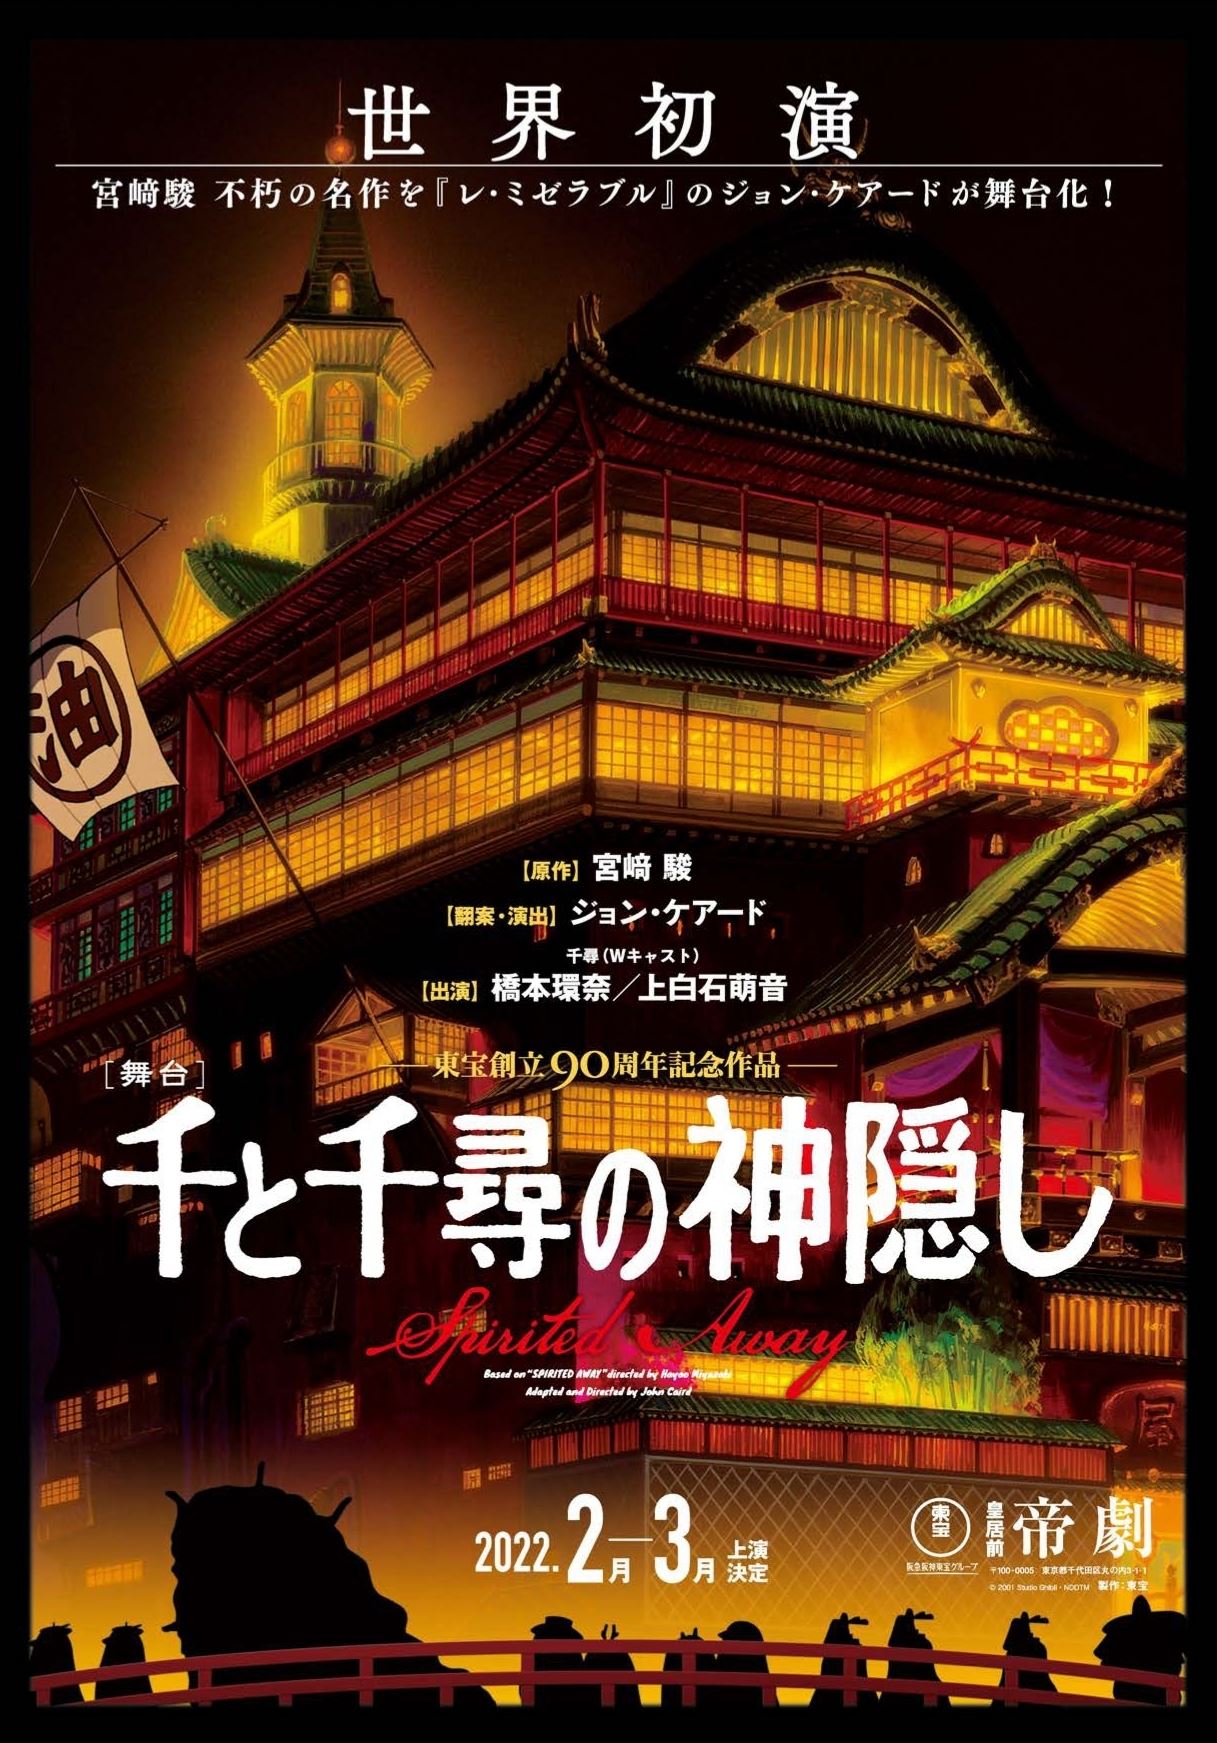 千と千尋の神隠し 舞台 チケット 6/6 - 演劇